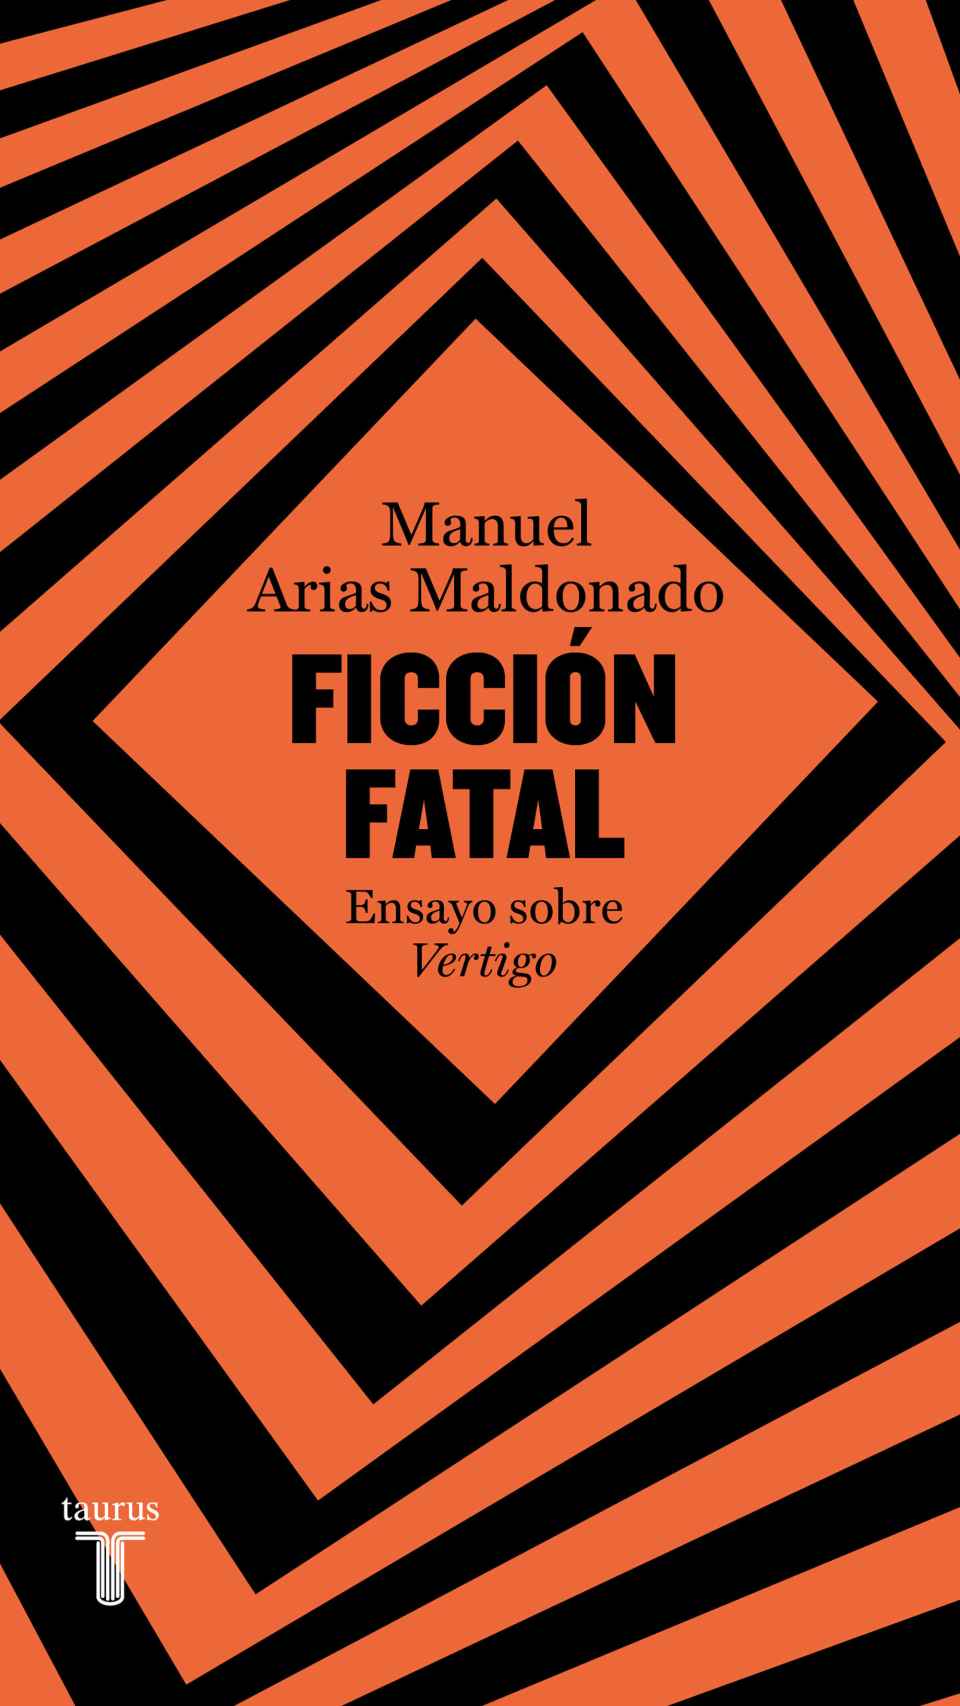 Ficción fatal. Manuel Arias Maldonado